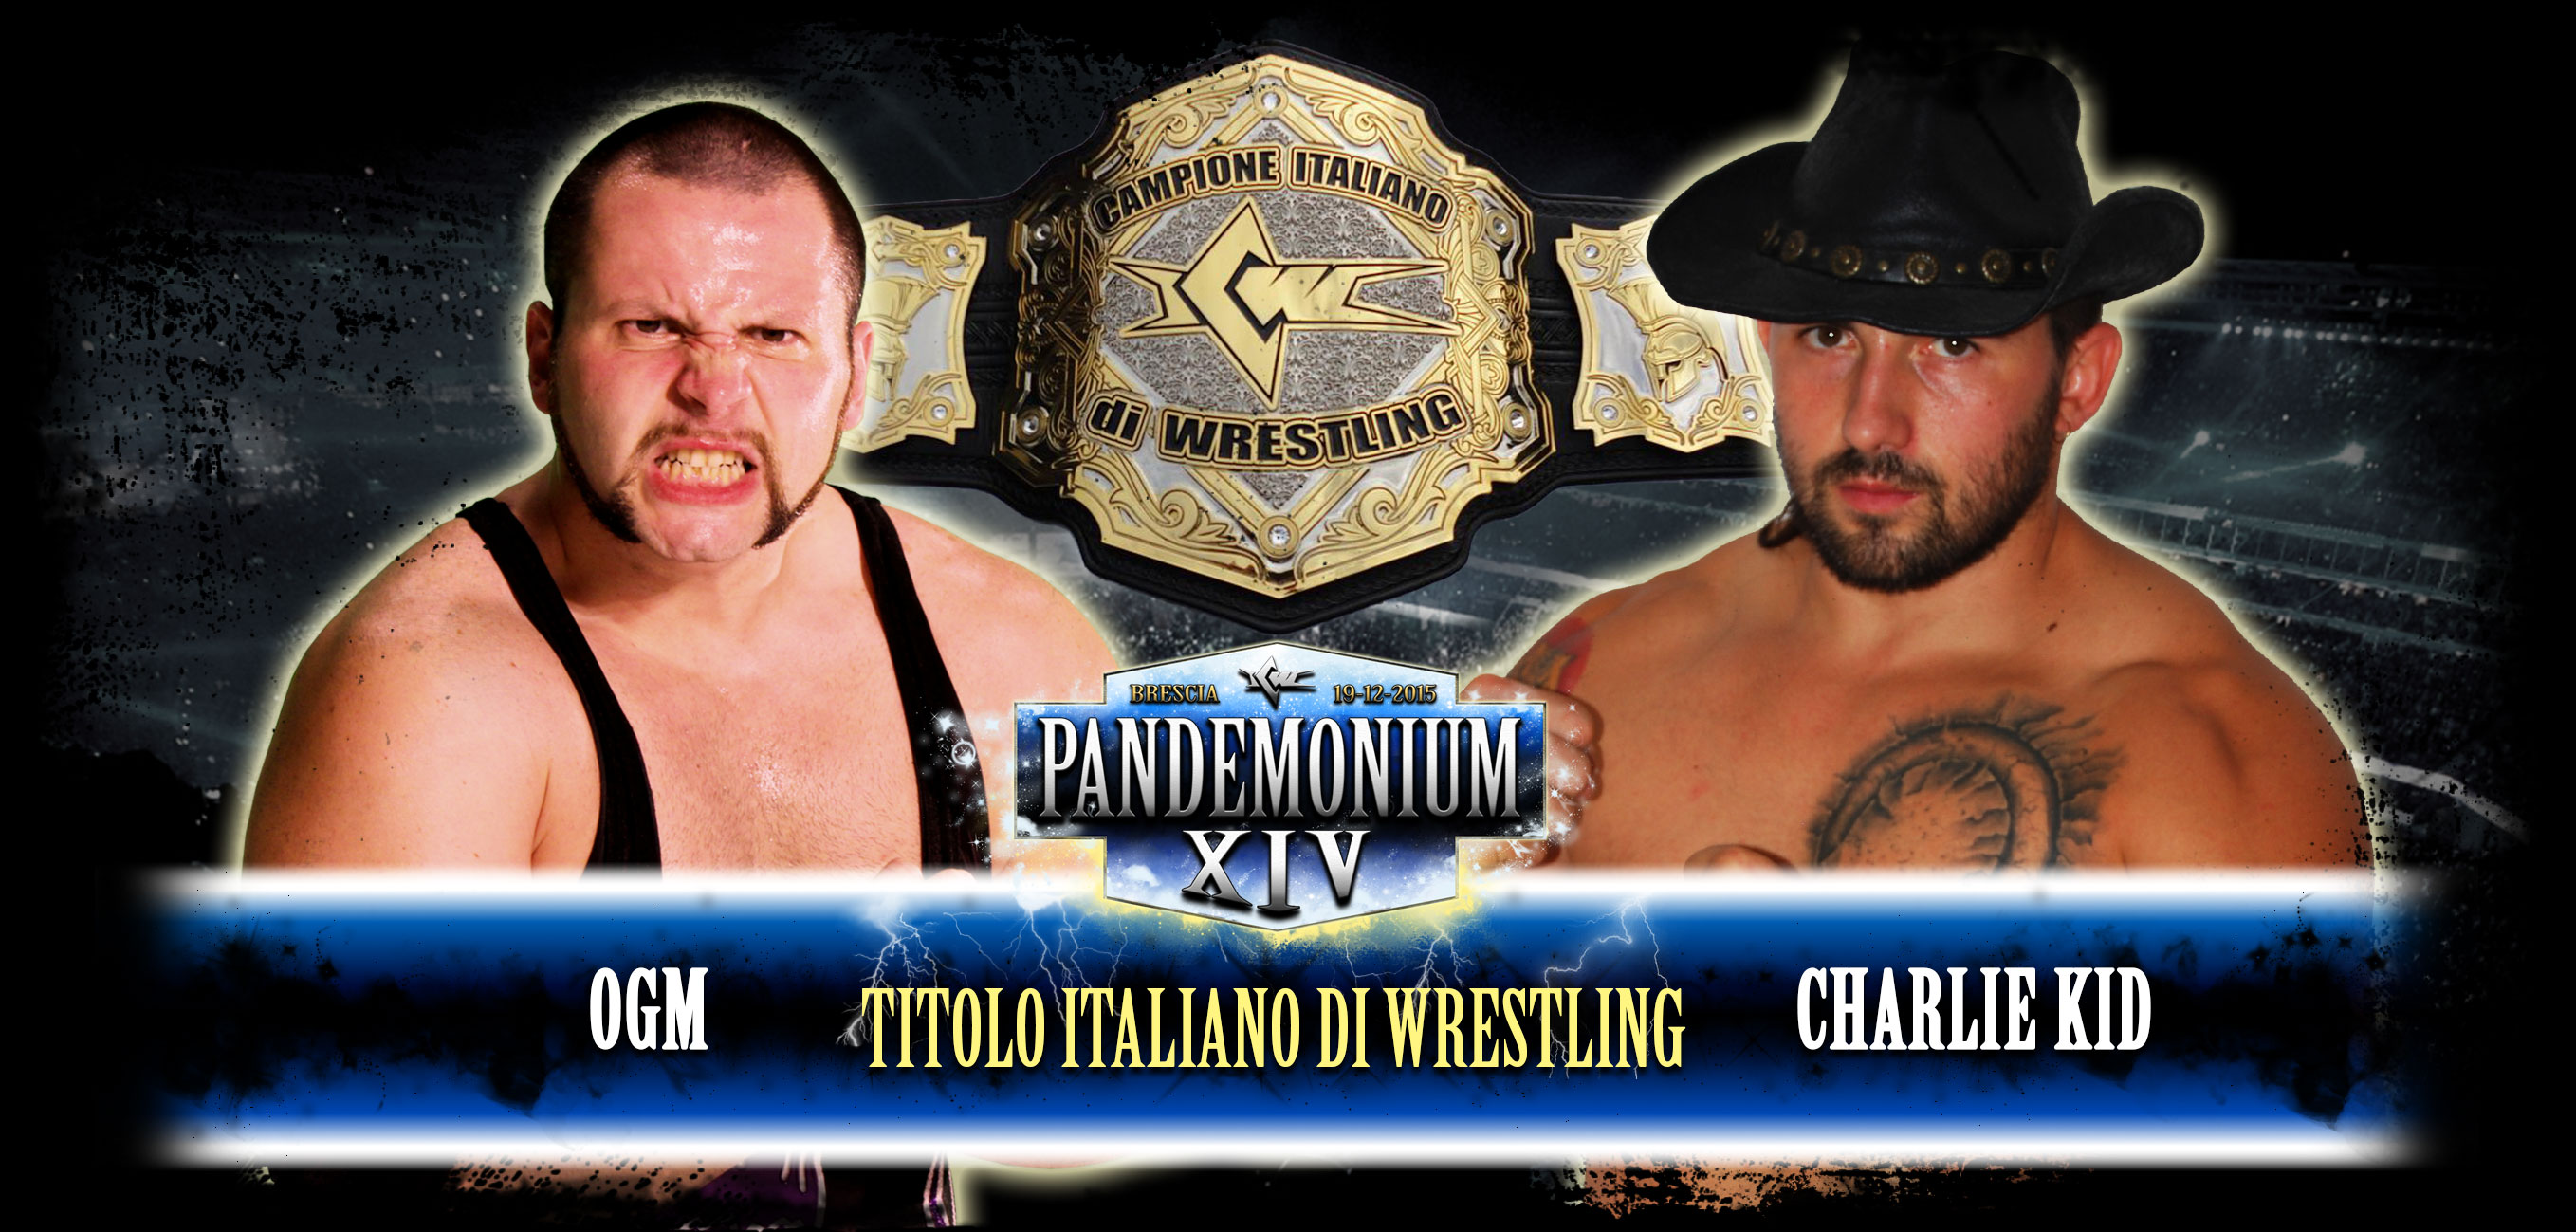 L’Olimpo del Wrestling Italiano: il programma completo di ICW Pandemonium XIV. Sabato 19 dicembre a Brescia!